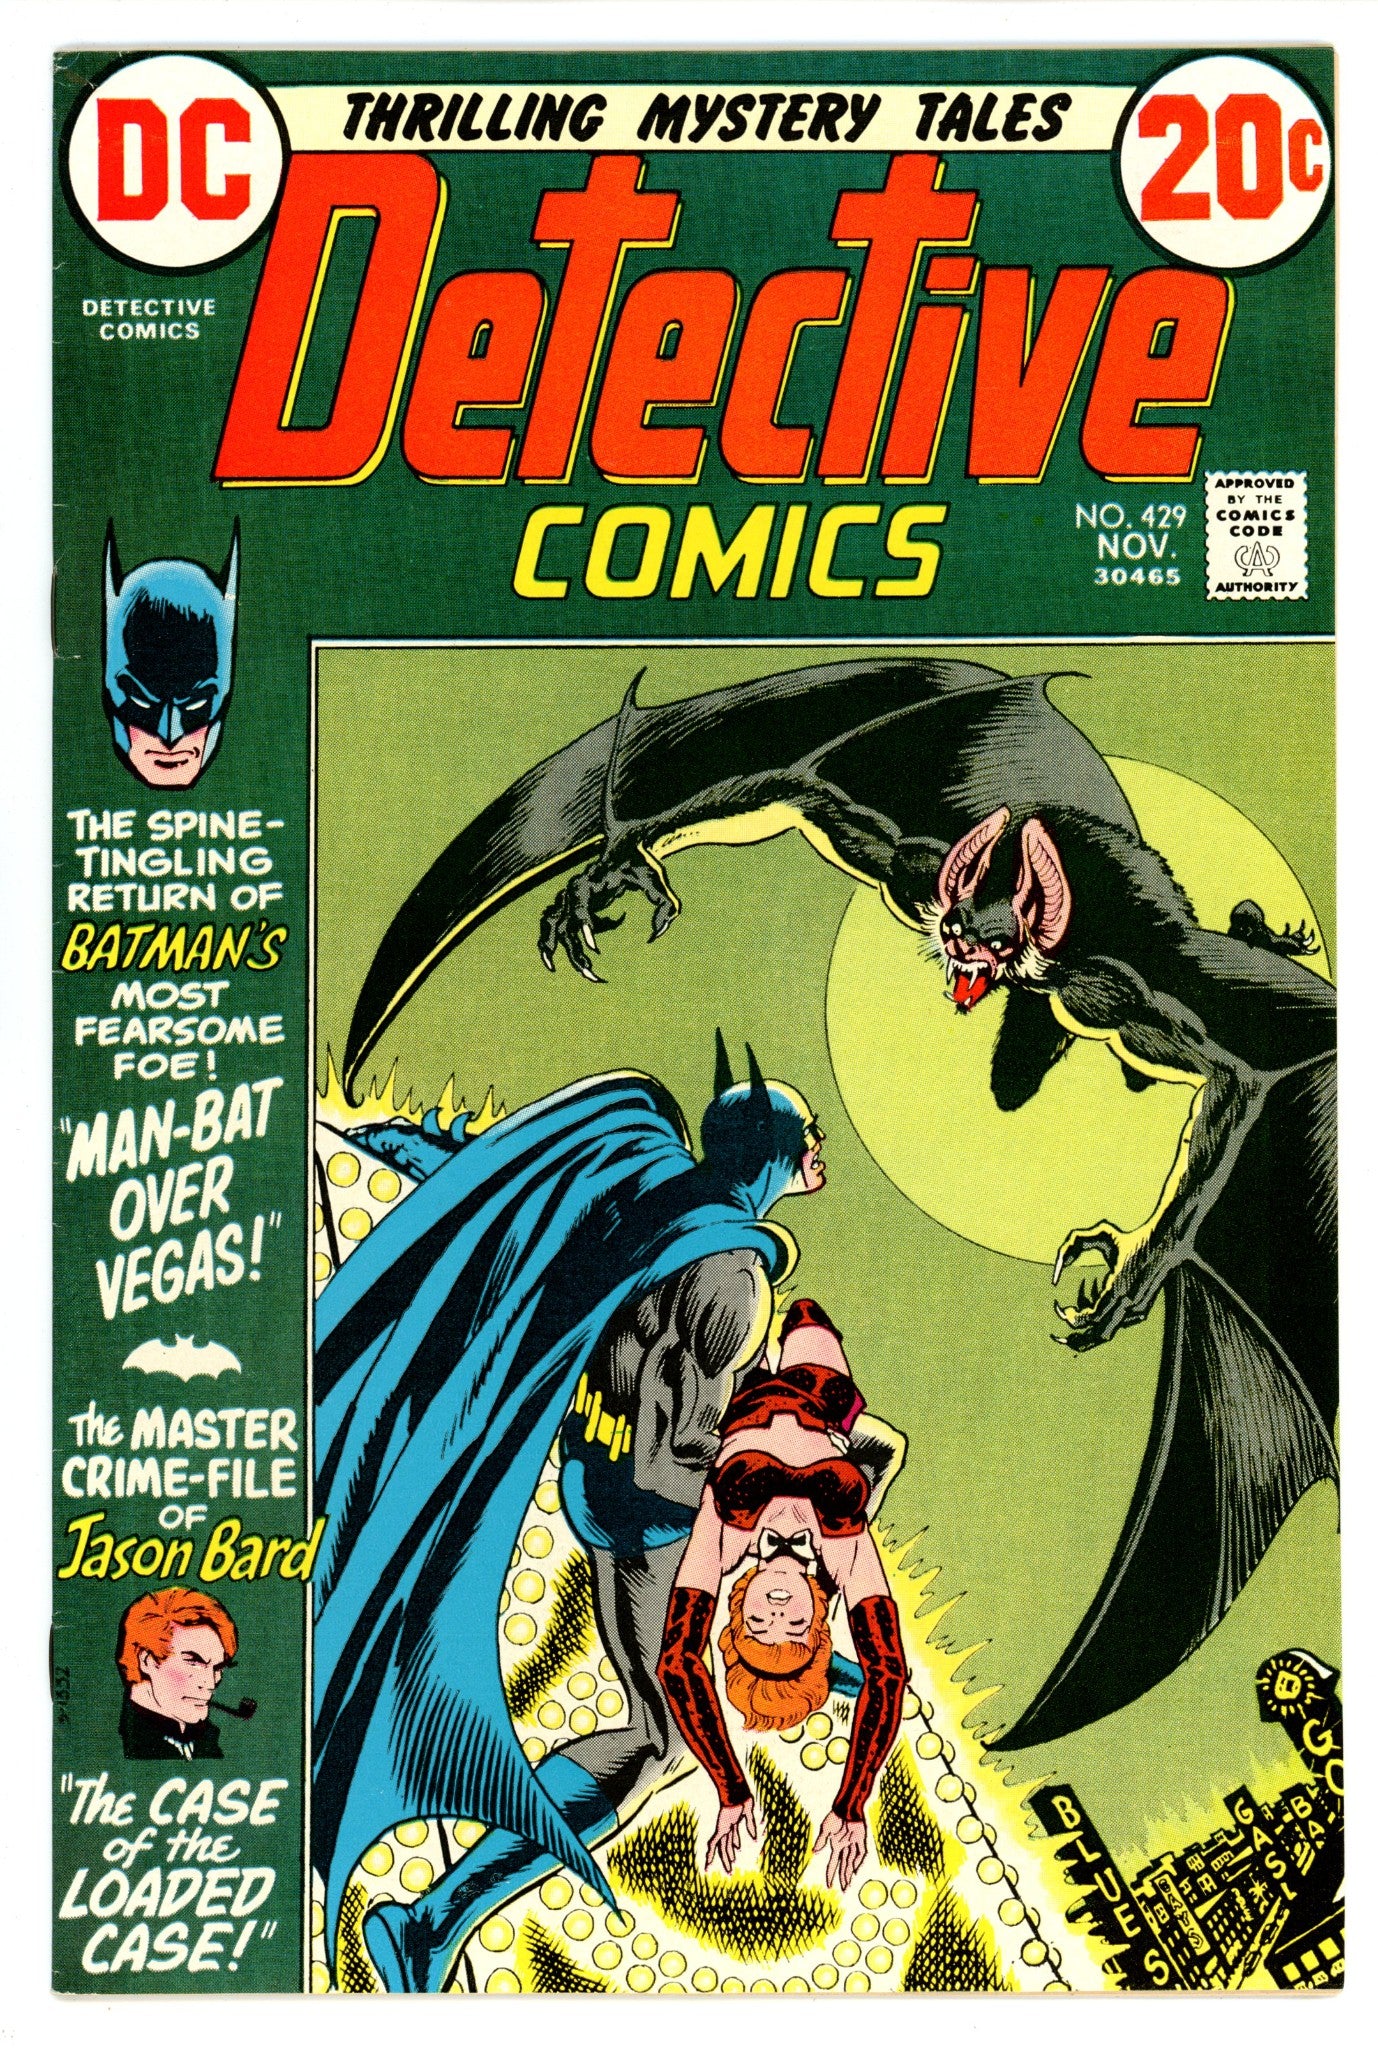 Detective Comics Vol 1 429 FN/VF (7.0) (1972) 